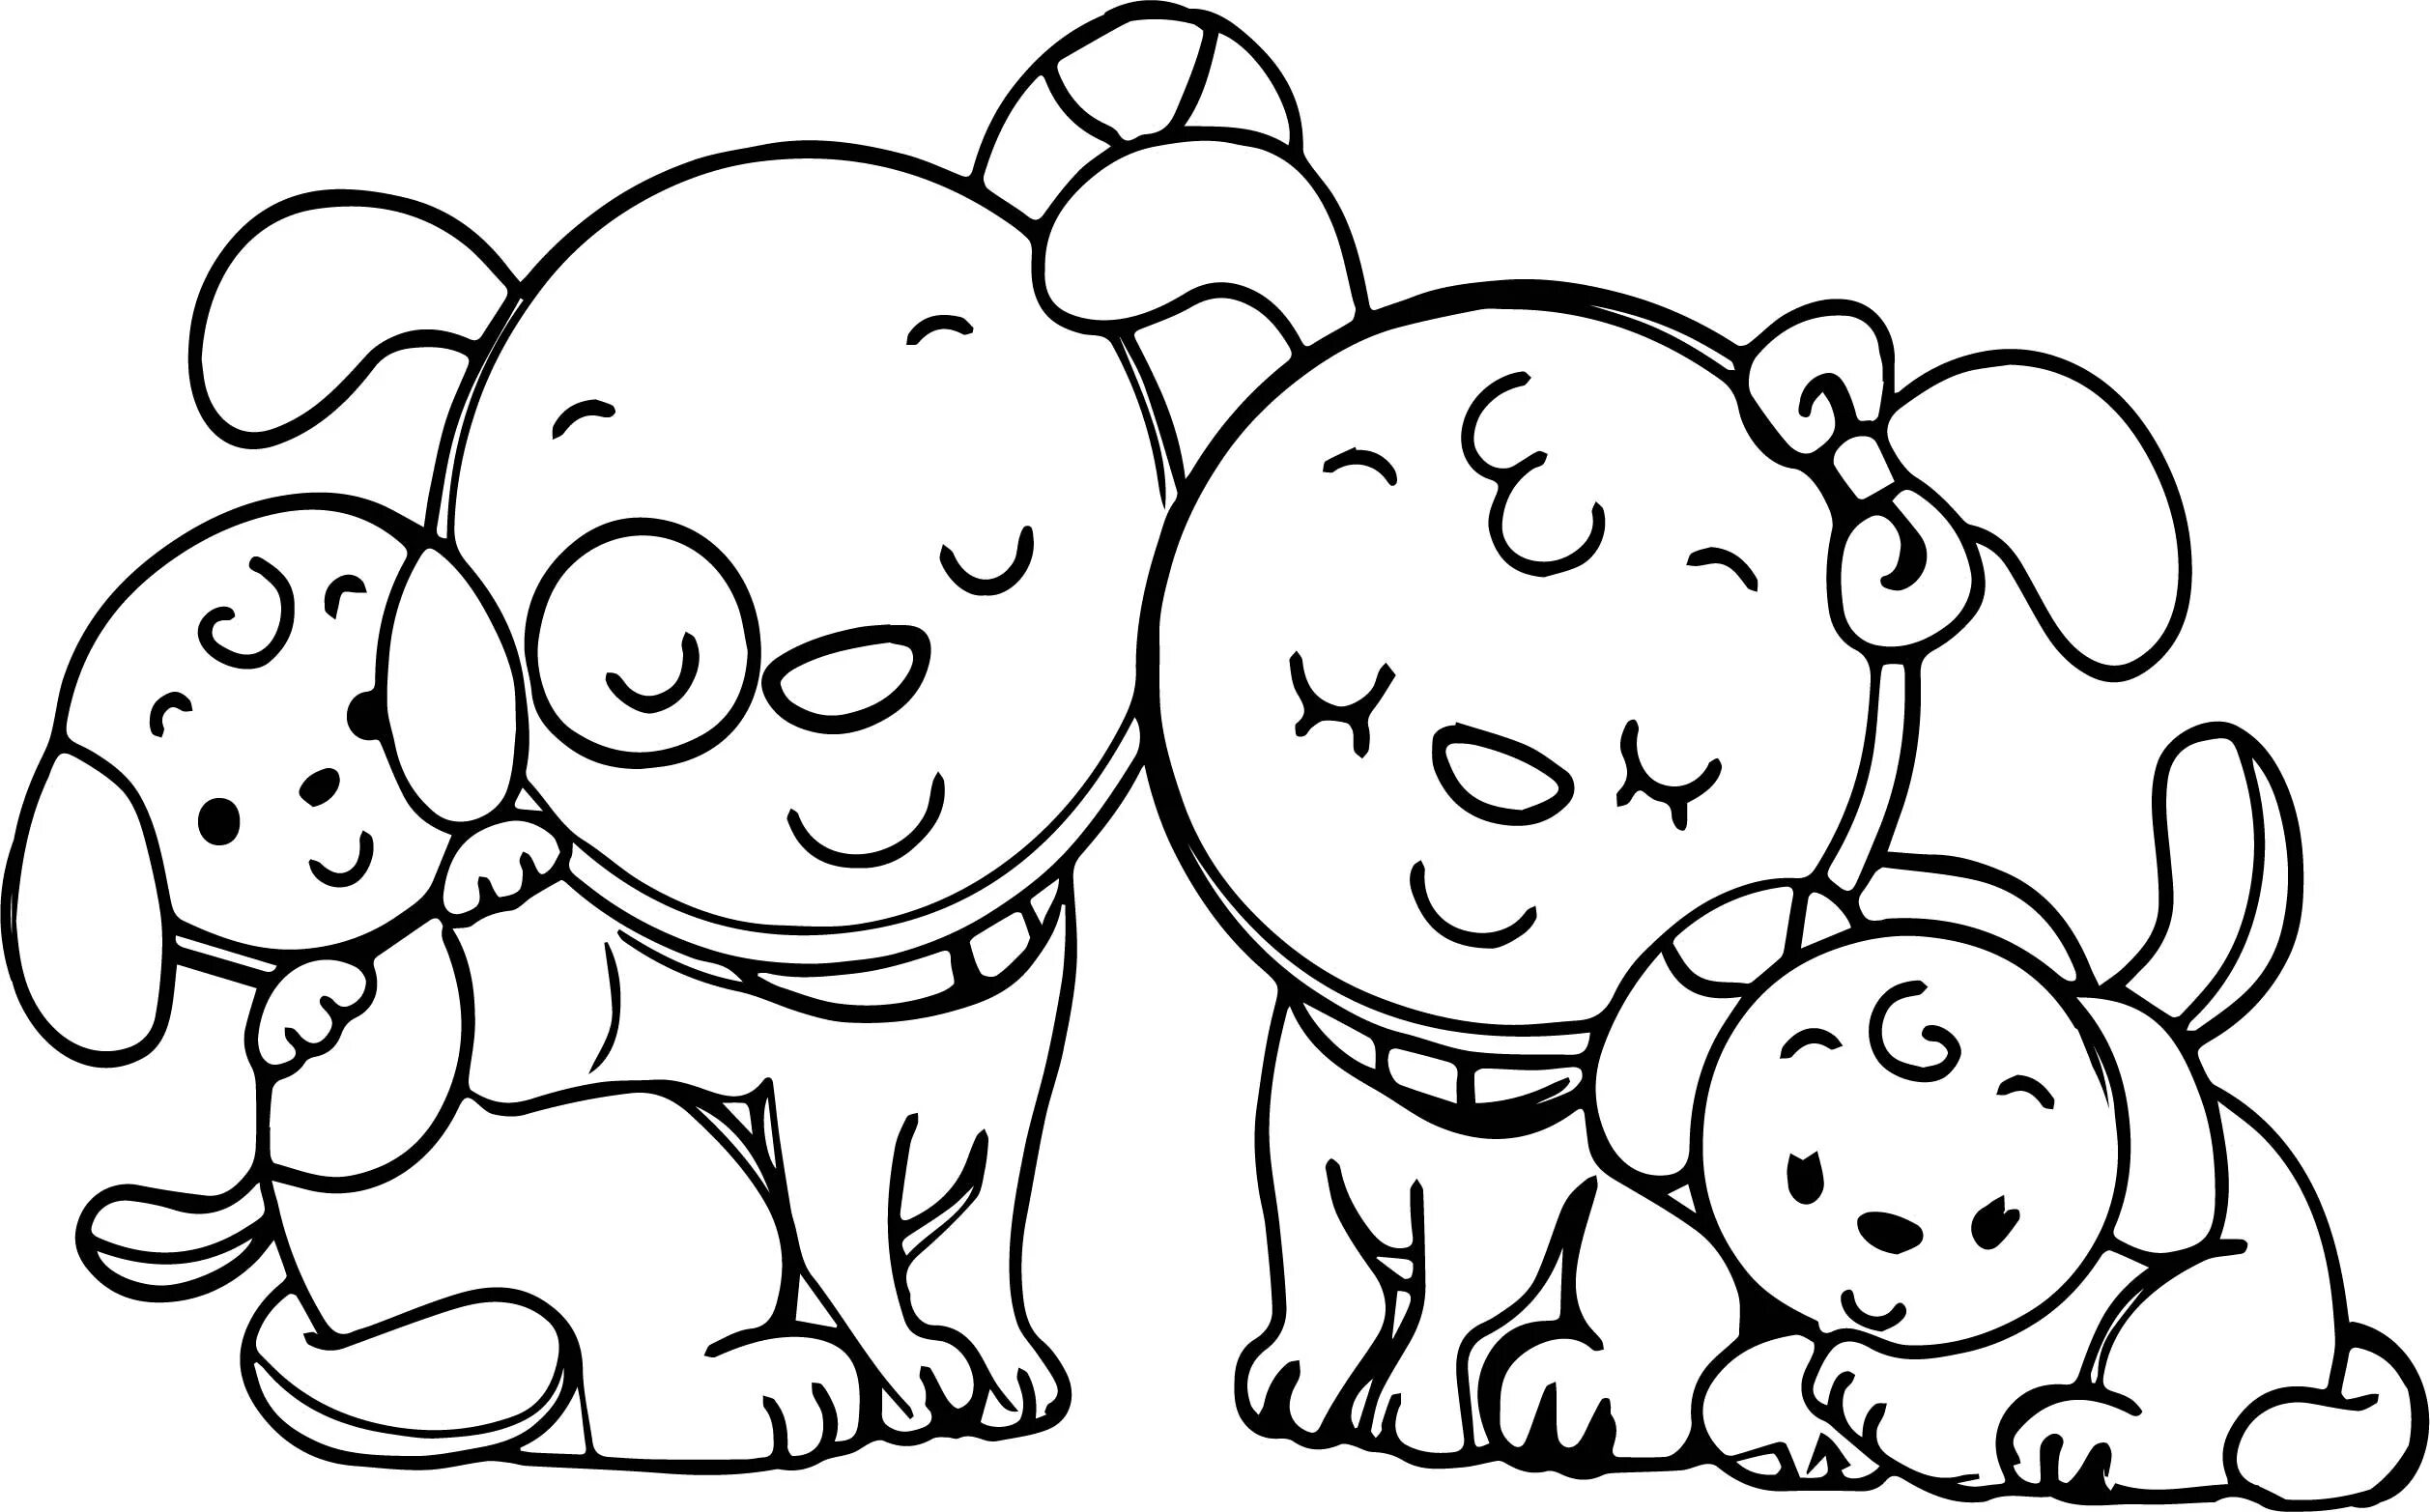 Раскраска семья снаггаббл пёс